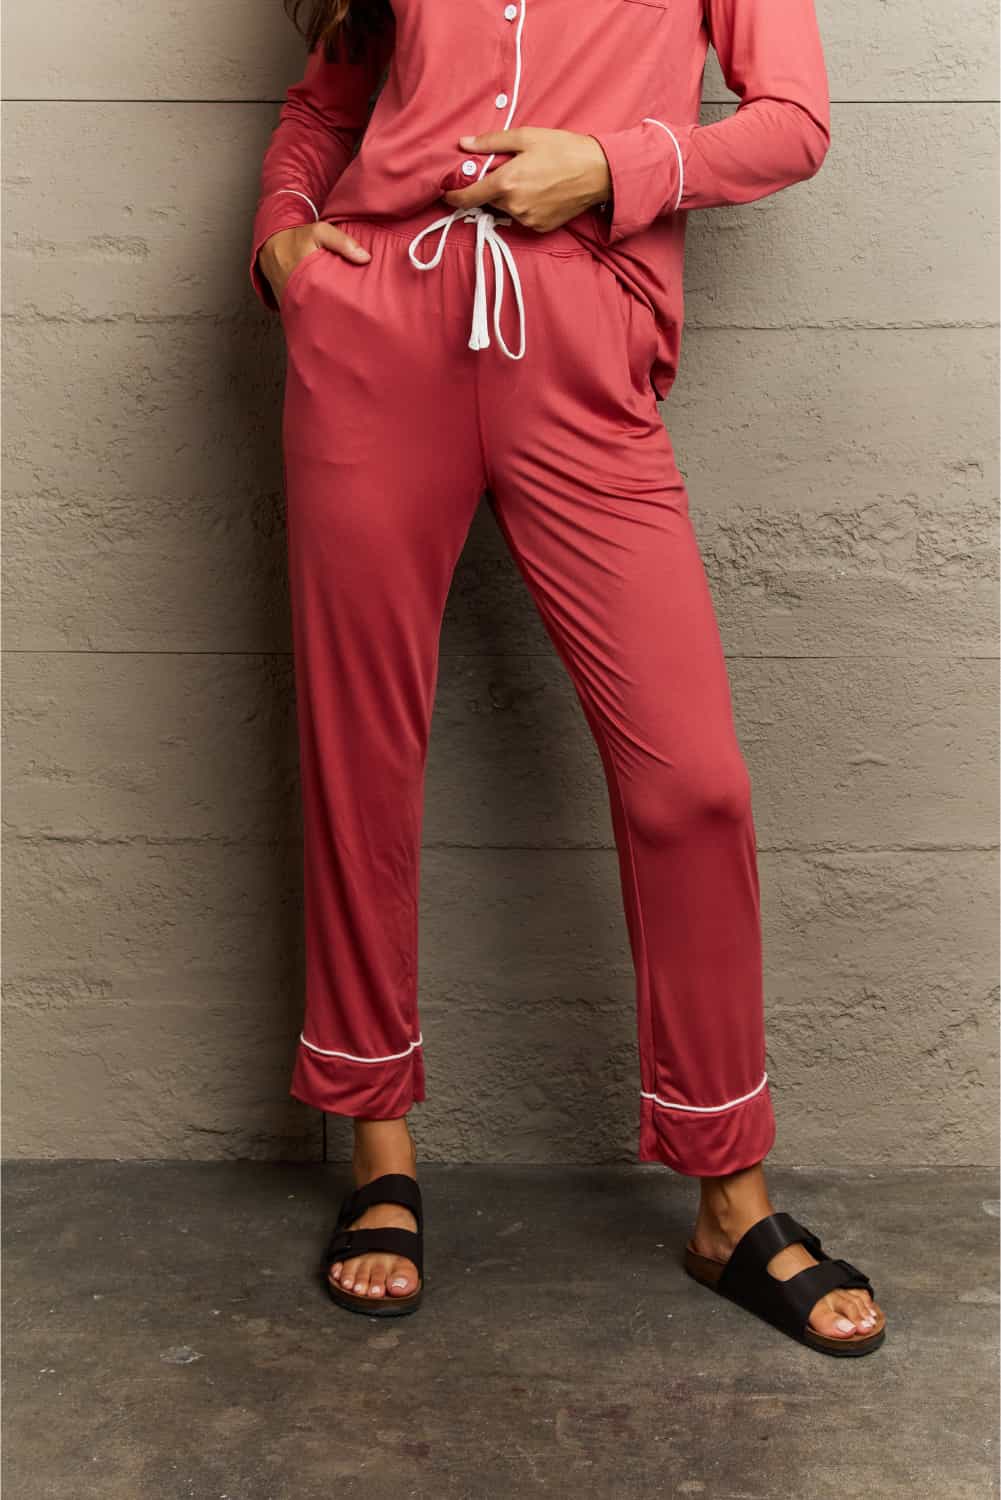 Ninexis Buttoned Collared Neck Top and Pants Pajama Set - bertofonsi